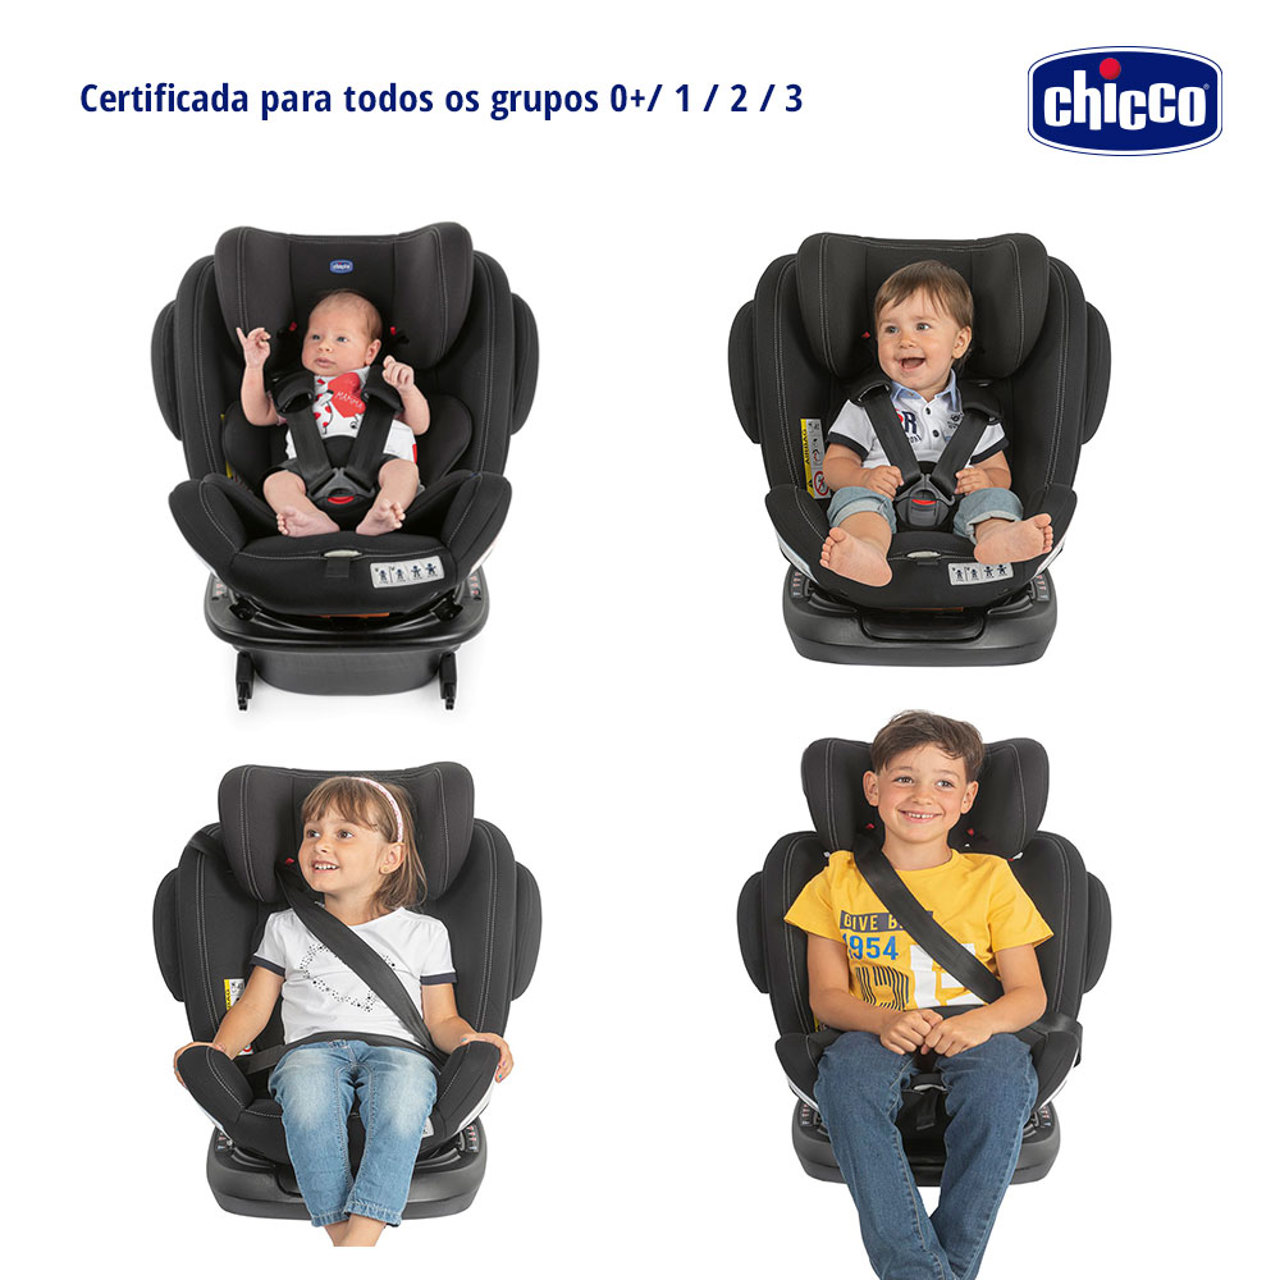 Chicco - Cadeira Auto Seat UP 012, Preto